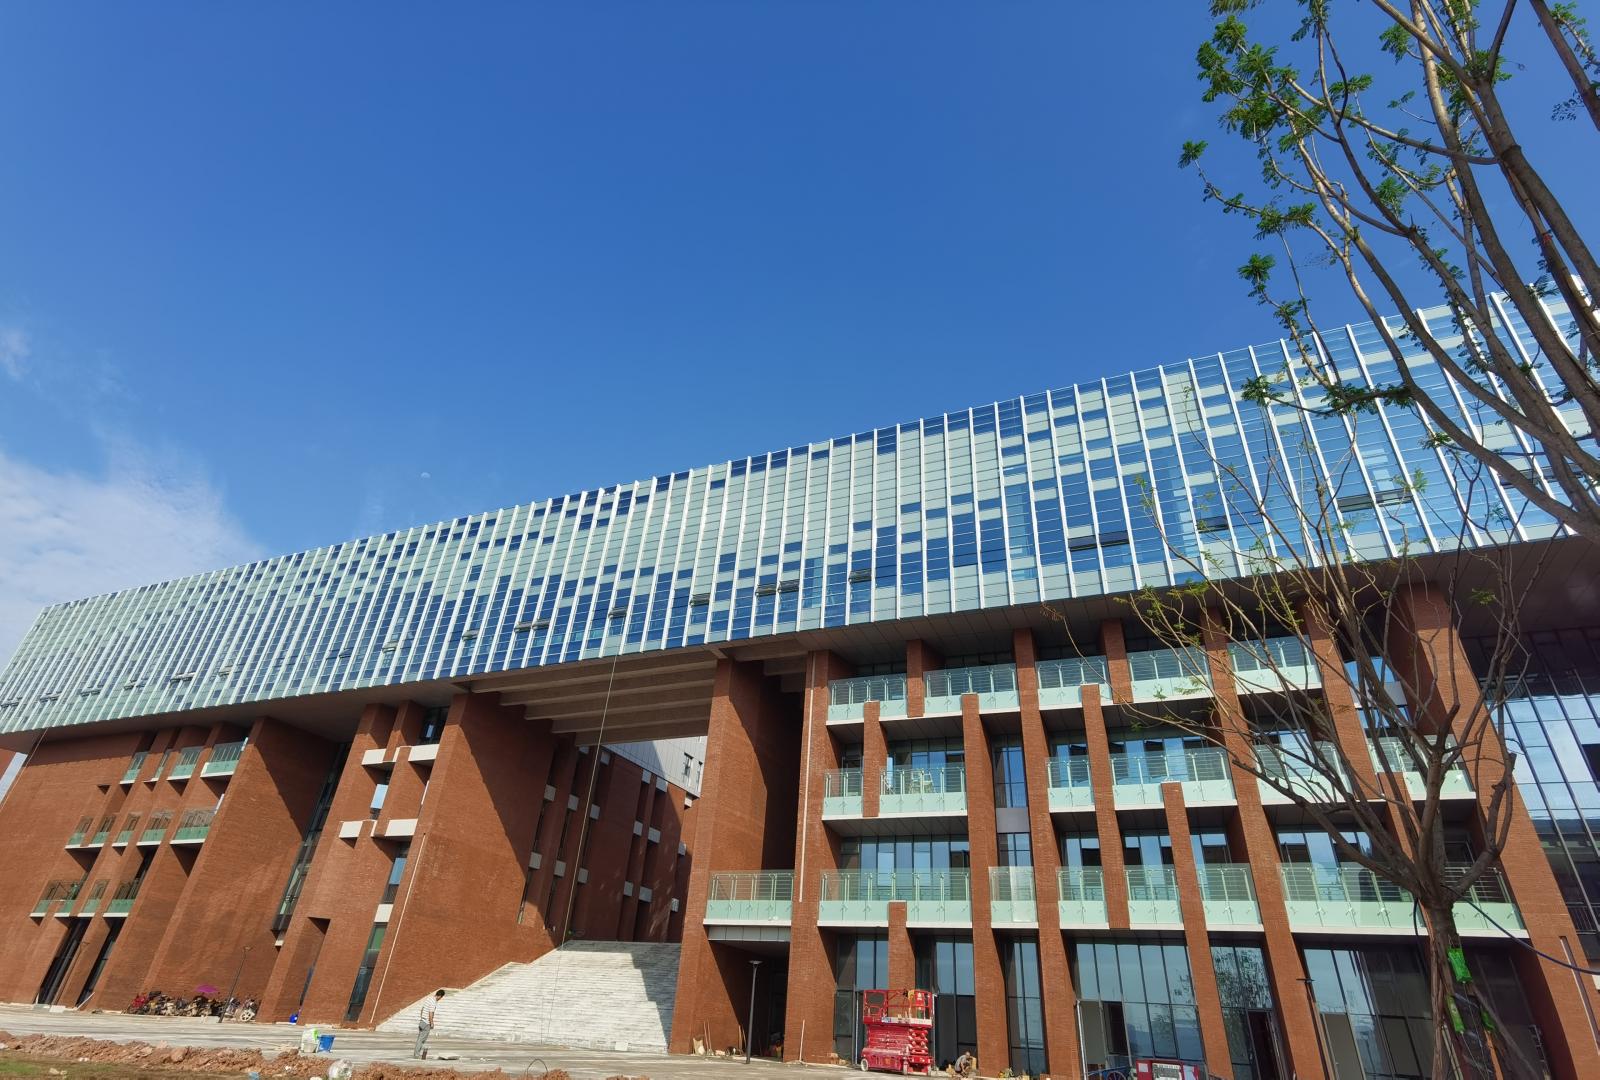 中國科學院大學重慶學院的圖書館，是其中一個應用了新型自動調光玻璃的地方。